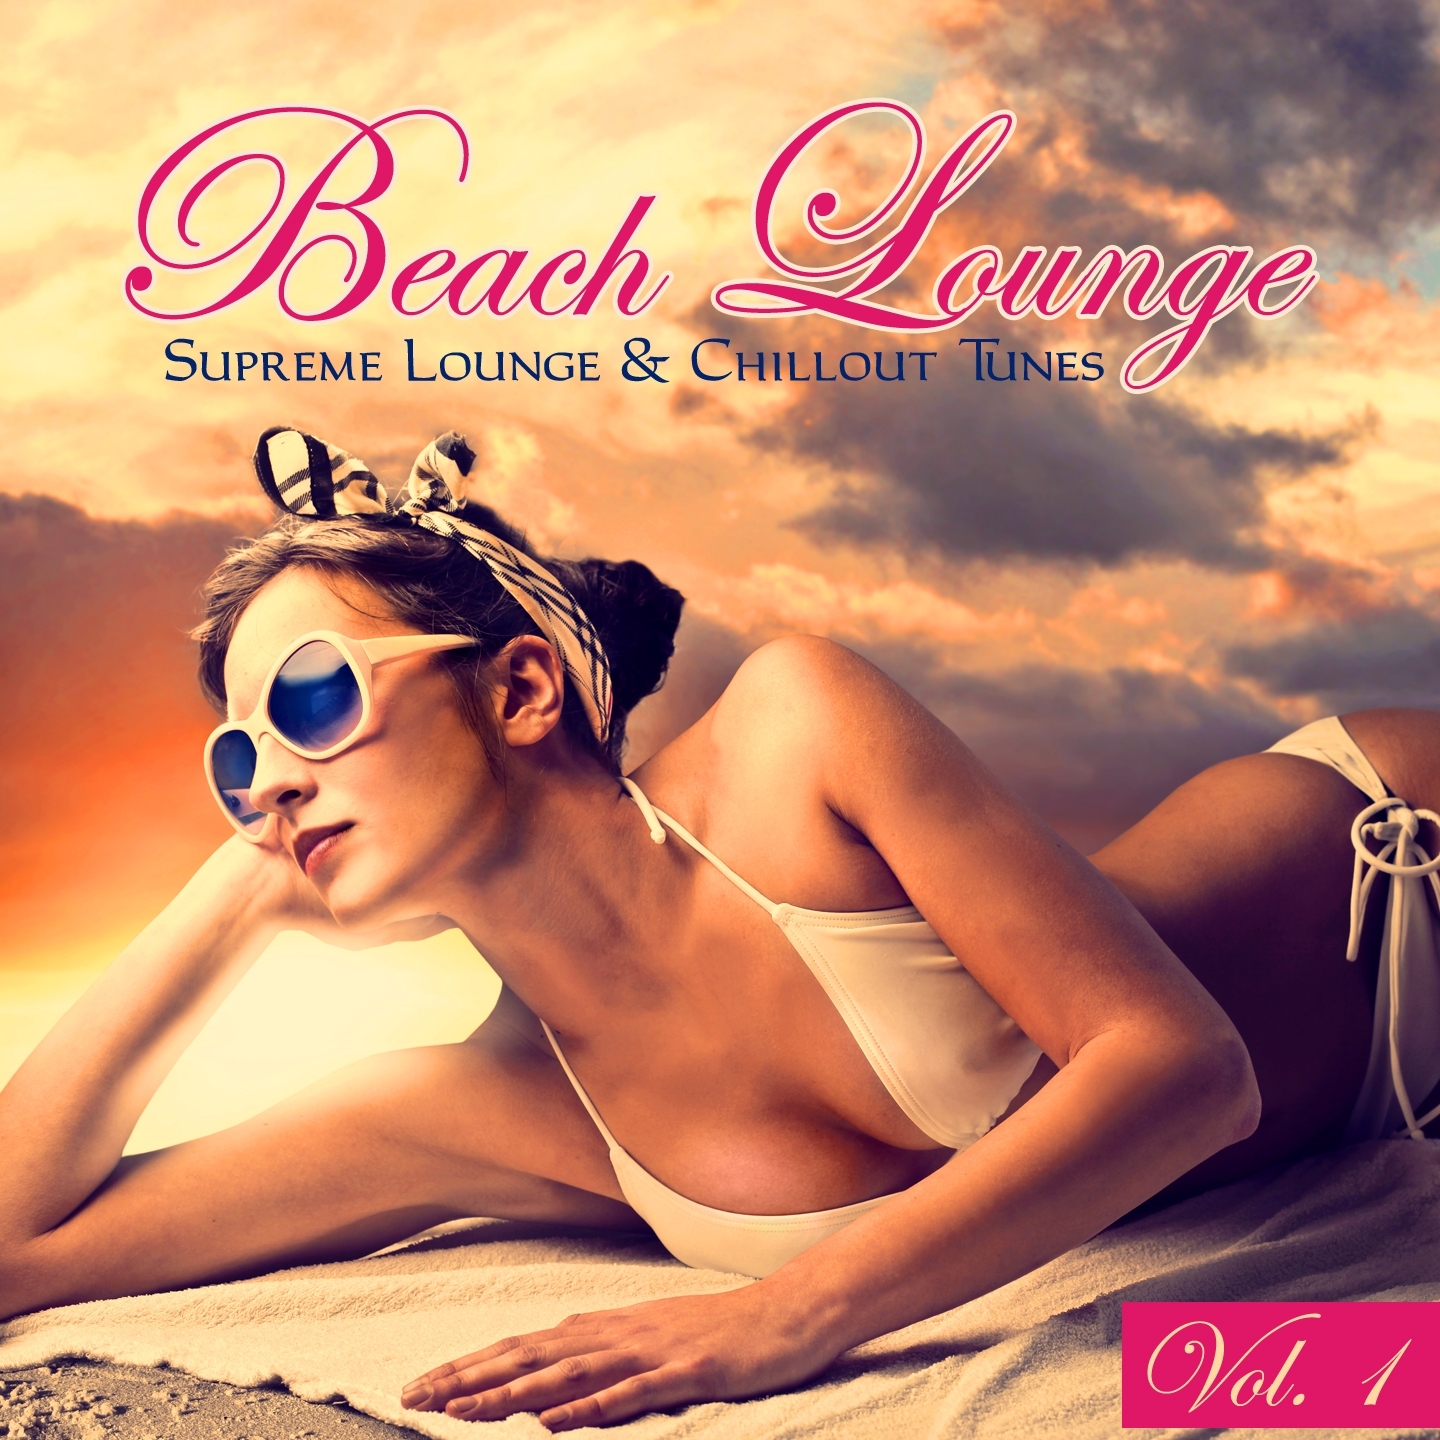 Beach Lounge, Vol. 1 - 20 Supreme Lounge & Chillout Tunes